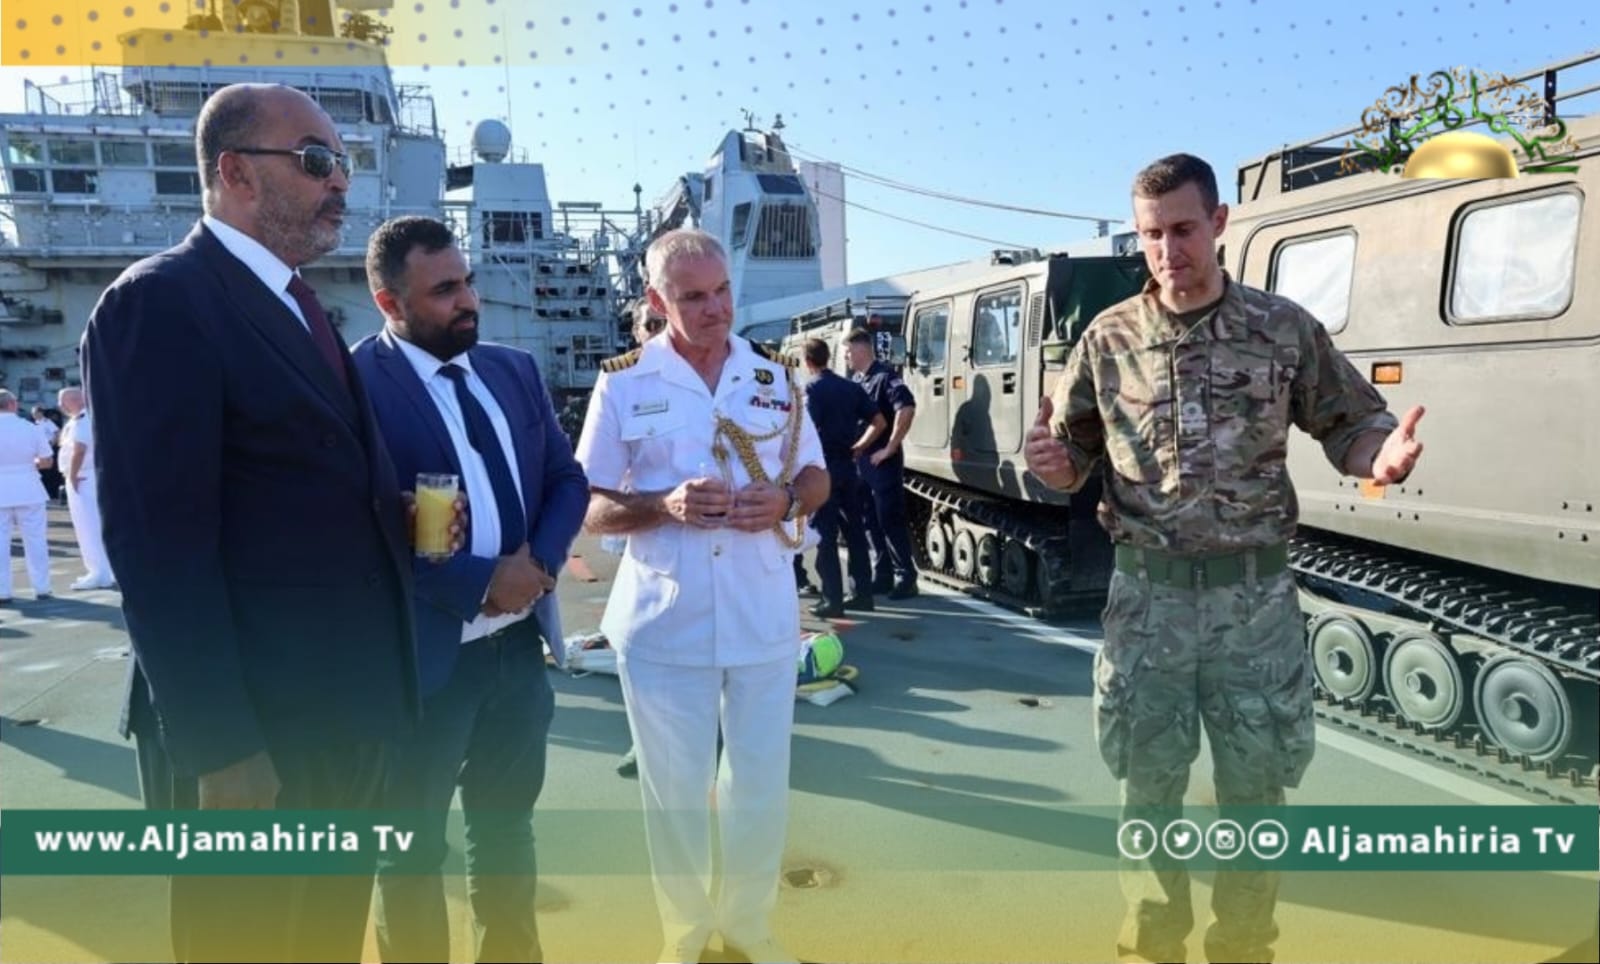 الكوني يتفقد بارجة الإنزال البريطانية بميناء طرابلس ويبحث سبل تعزيز التعاون العسكري